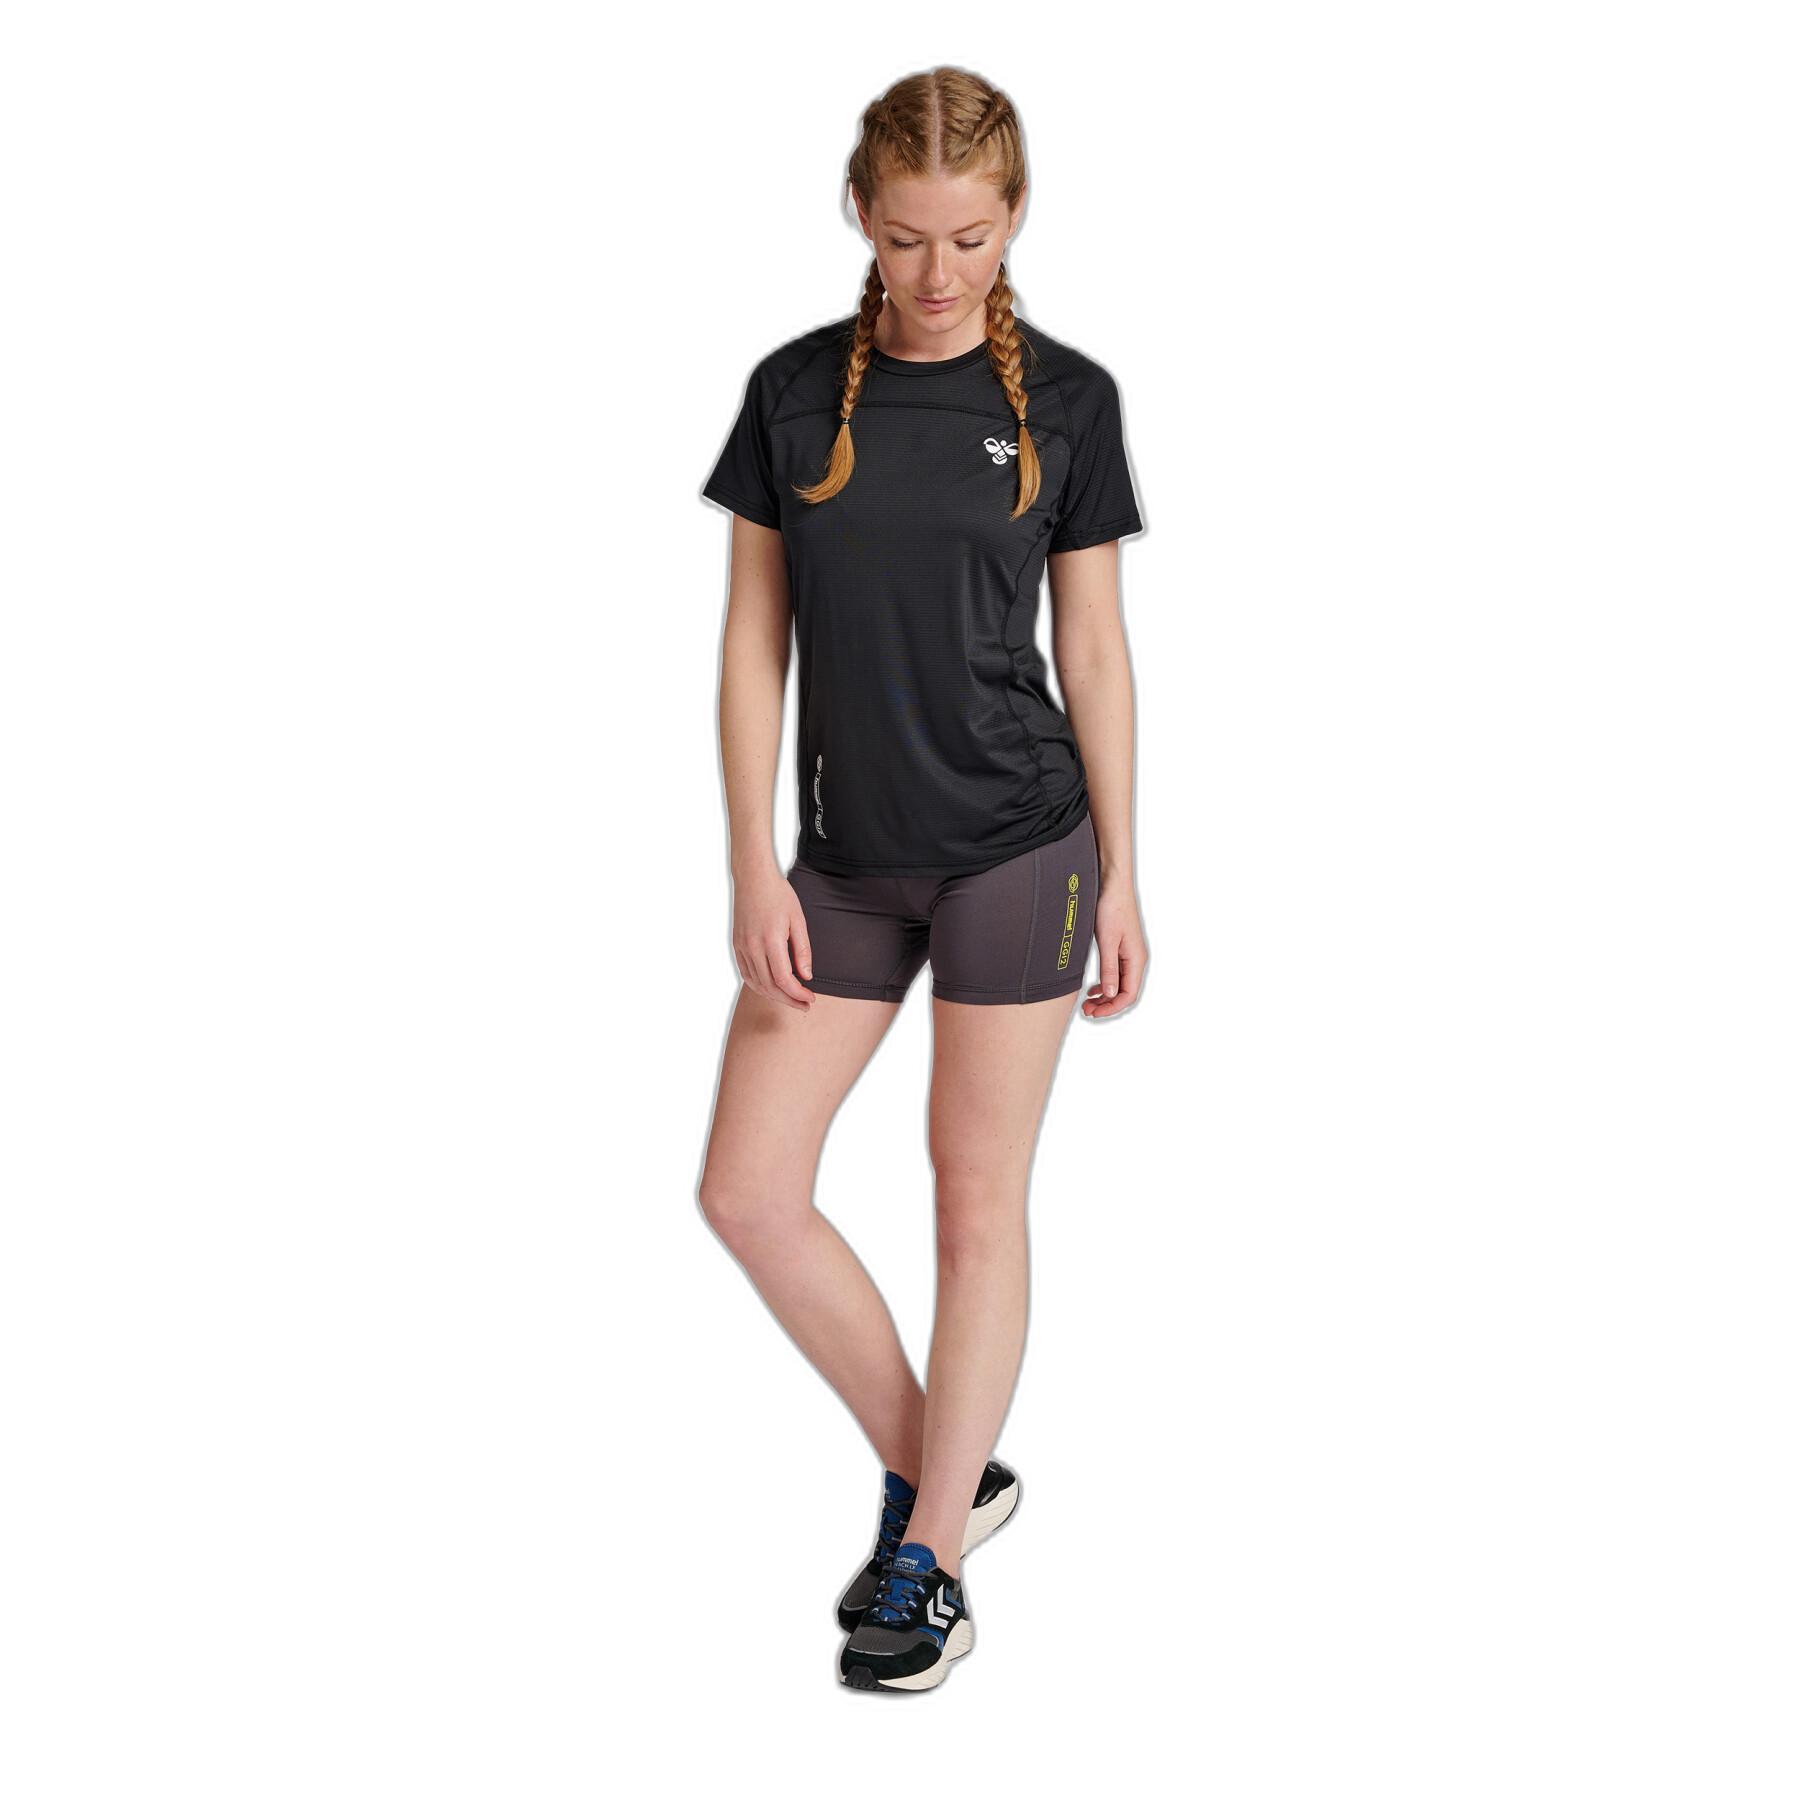 Women's high waist training shorts Hummel GG 12